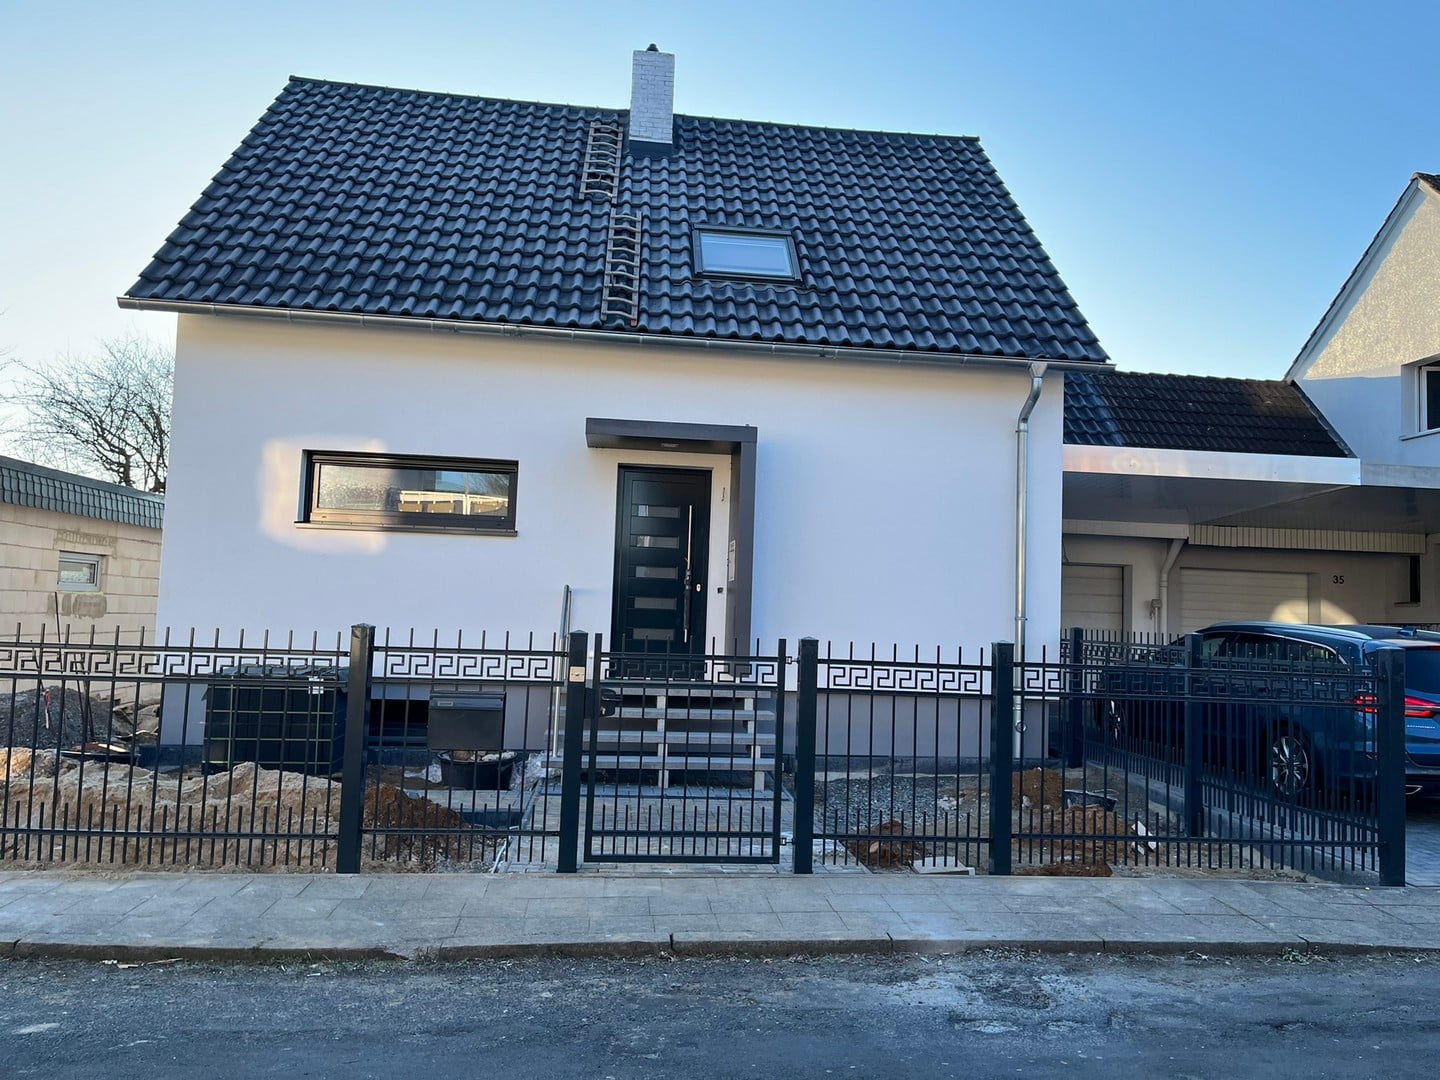 Einfamilienhaus mit Zaun und Carport in Deutschland.